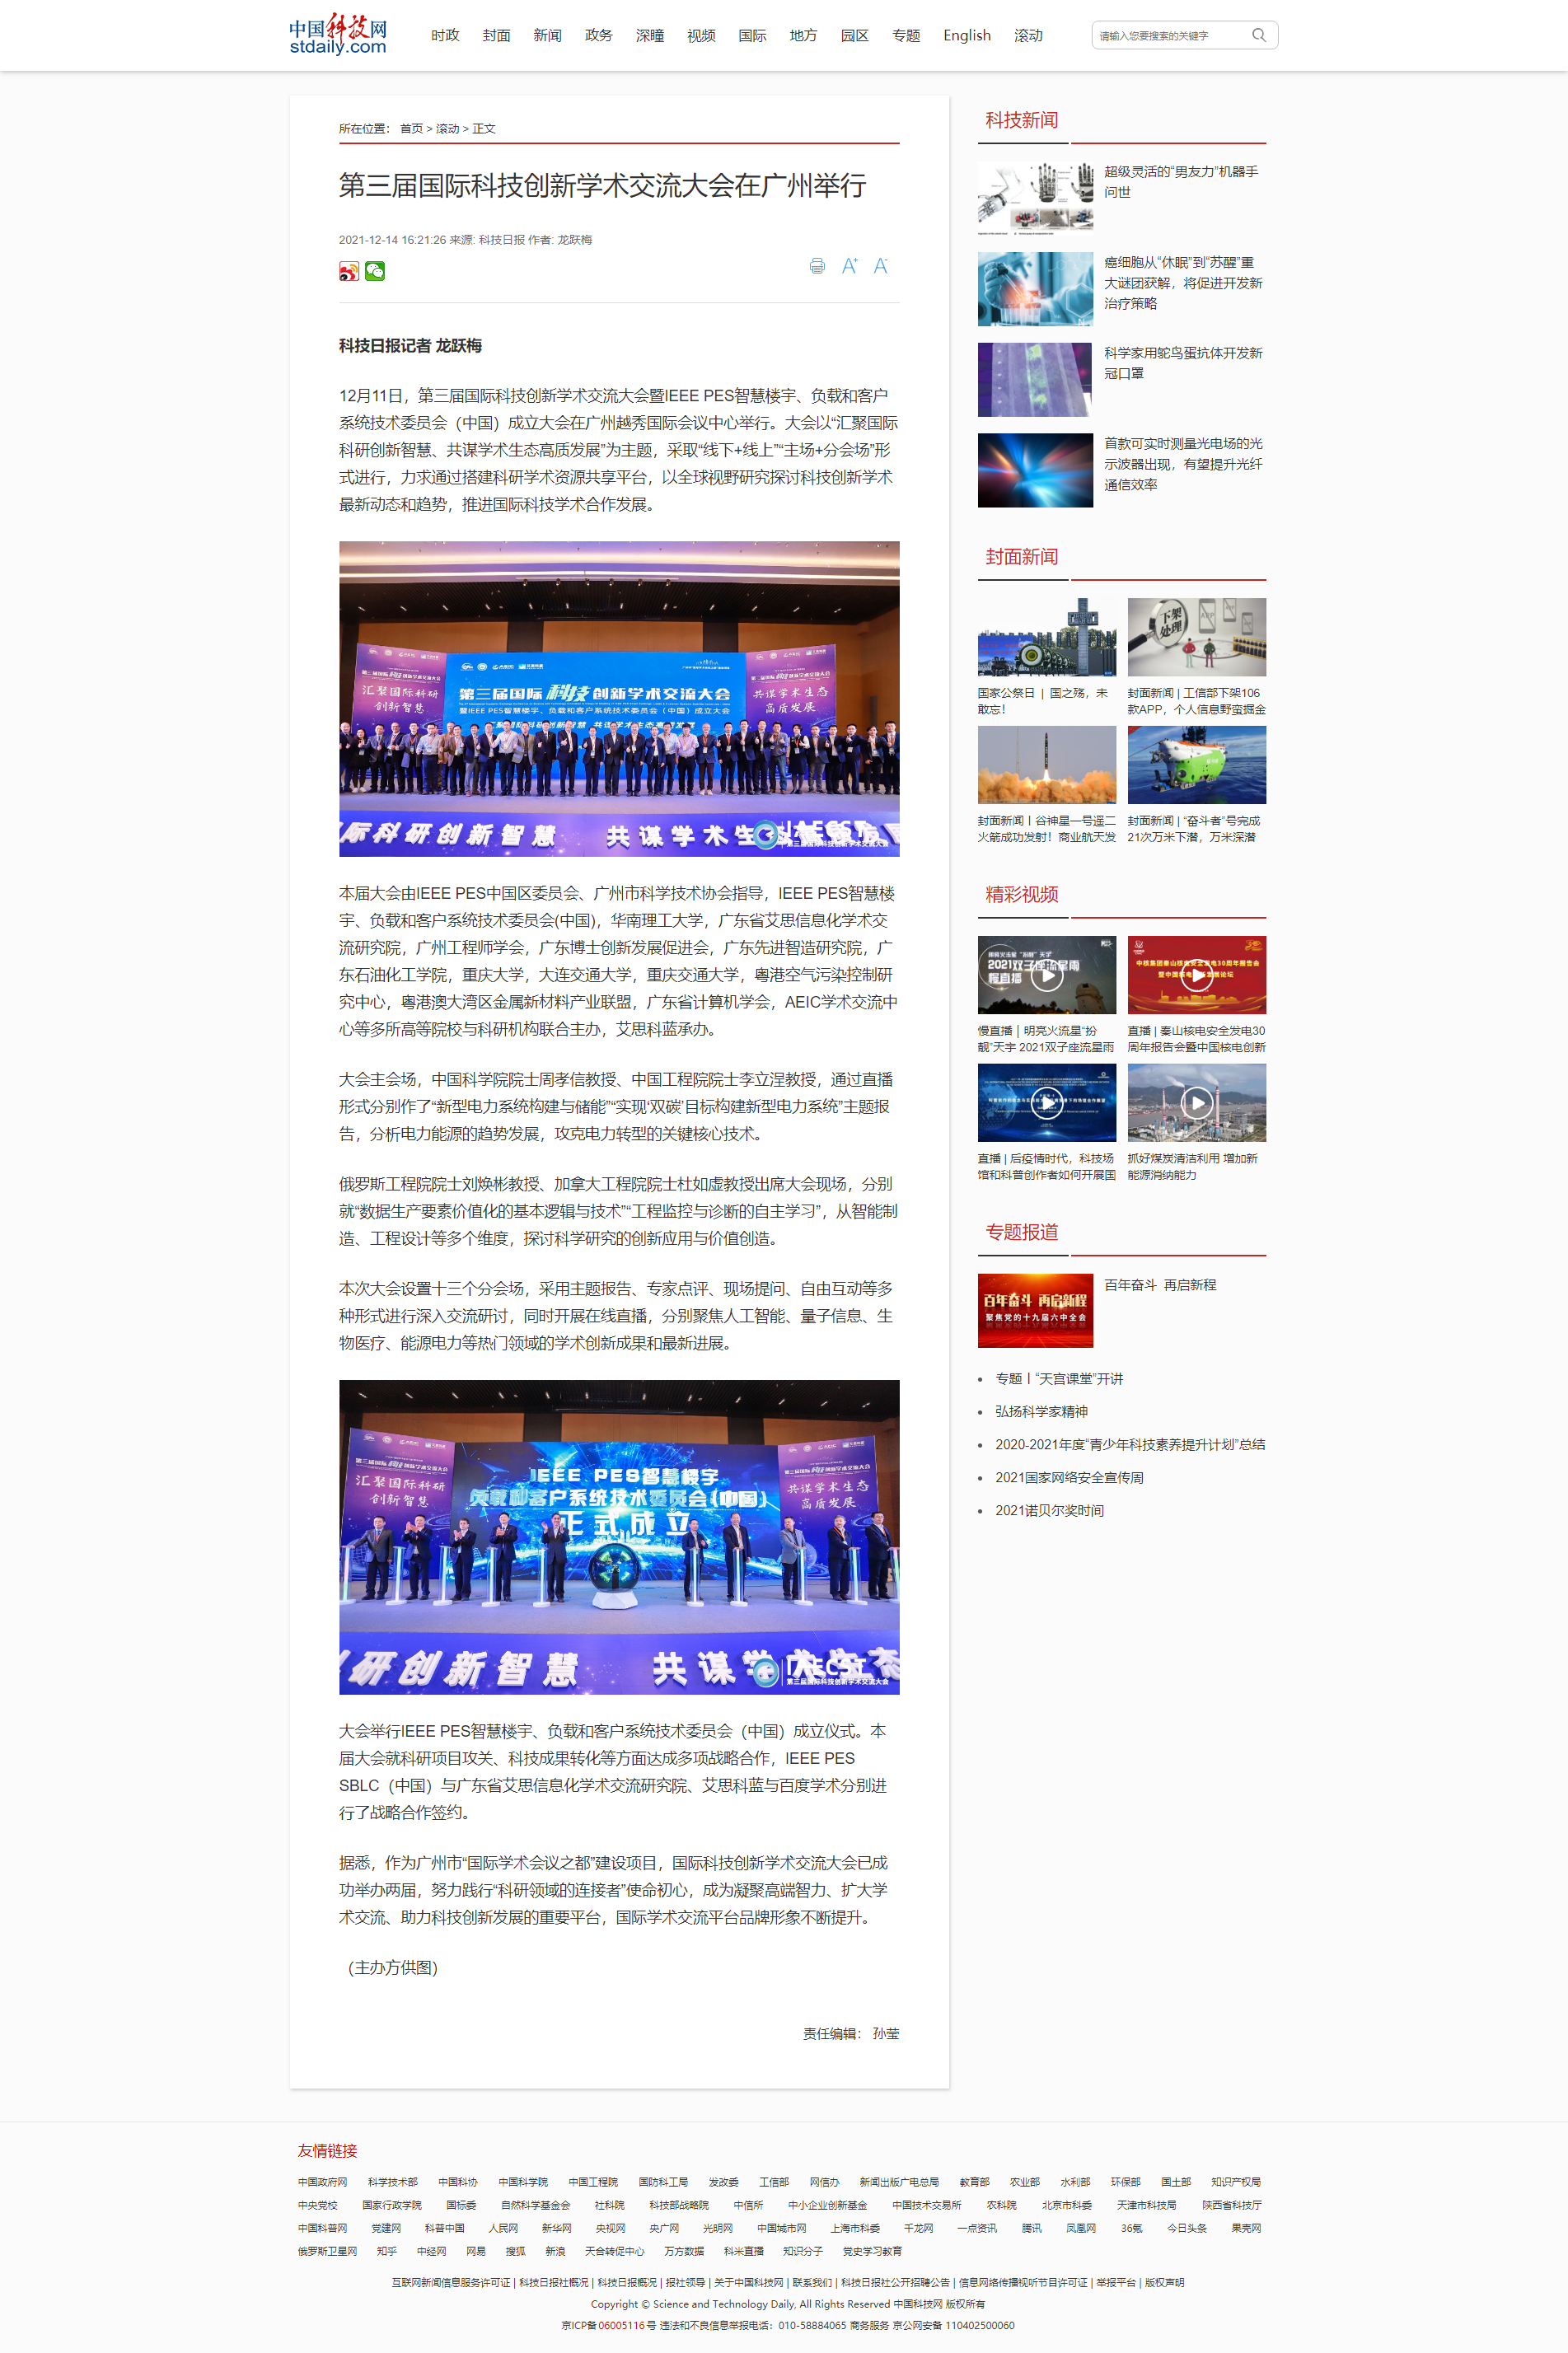 第三届科创大会-中国科技网.png